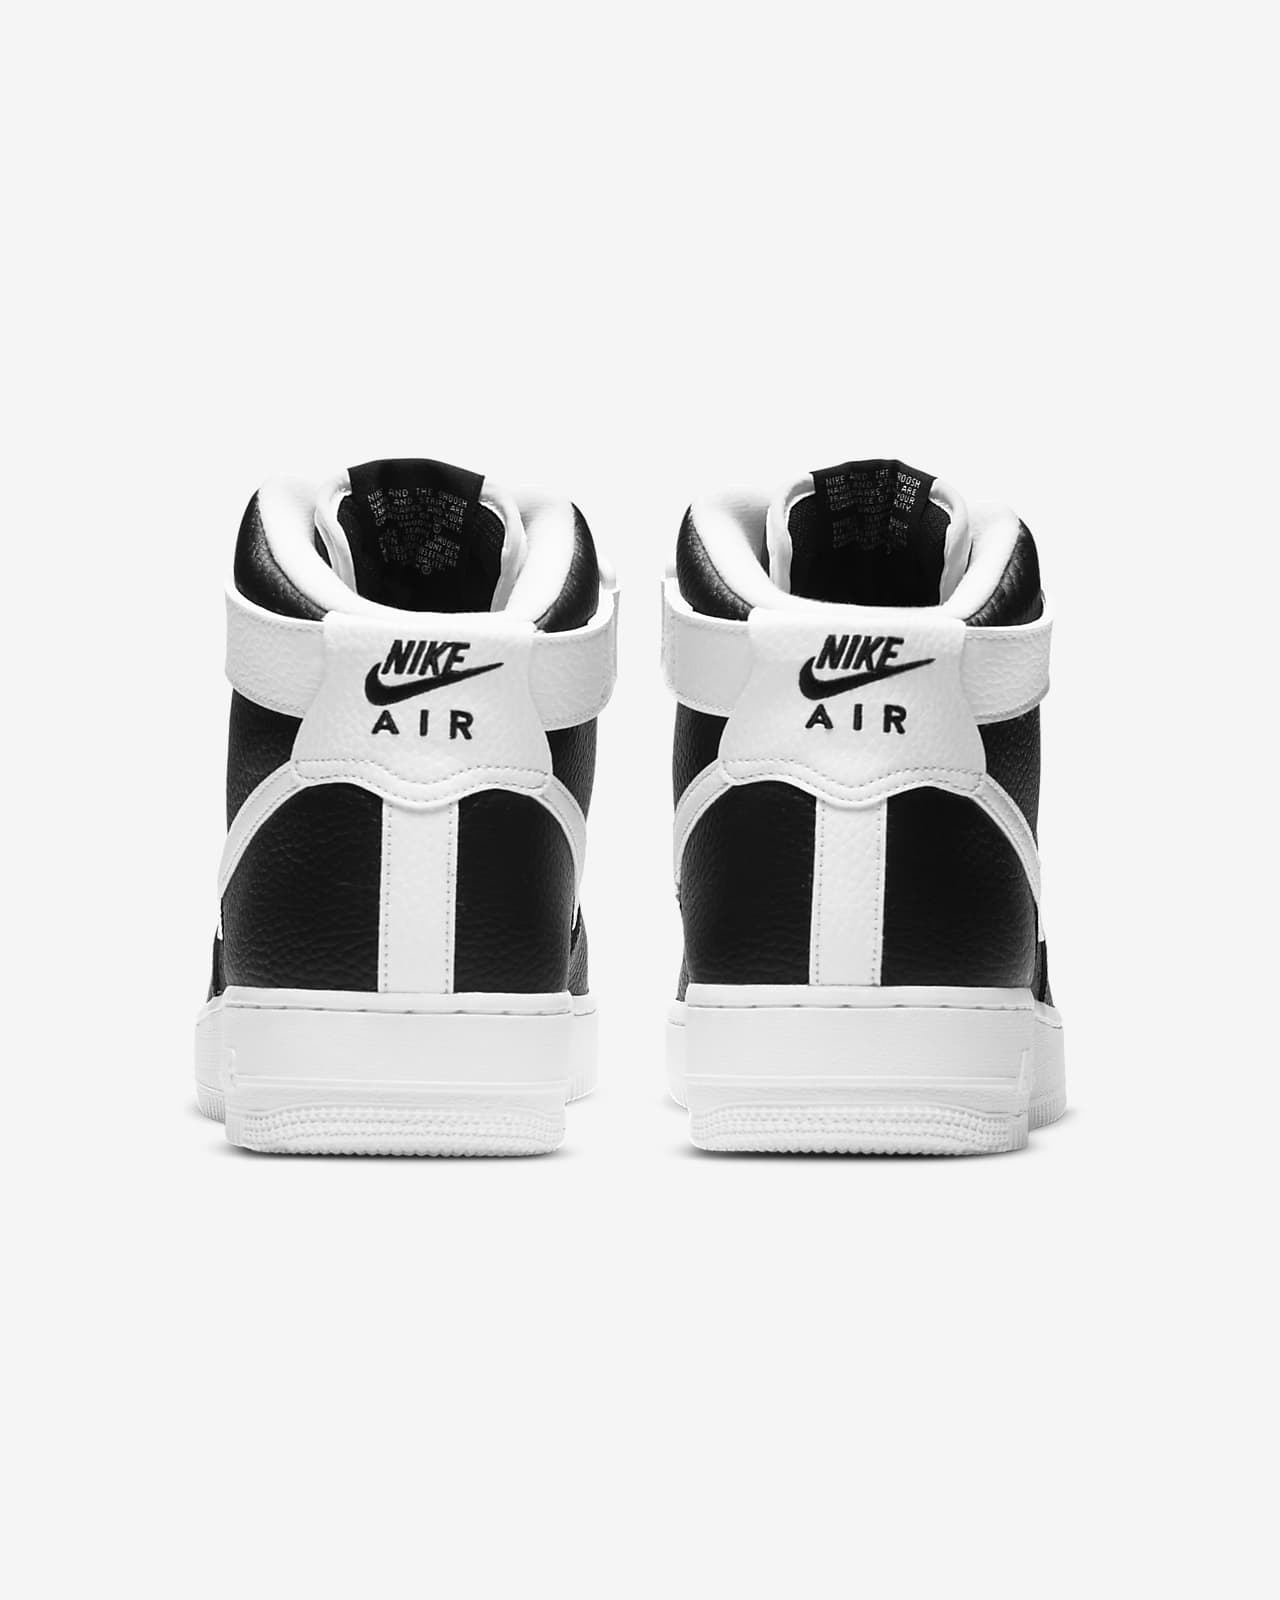 Nike Men's Air Force 1 High '07 Premium Casual Shoe